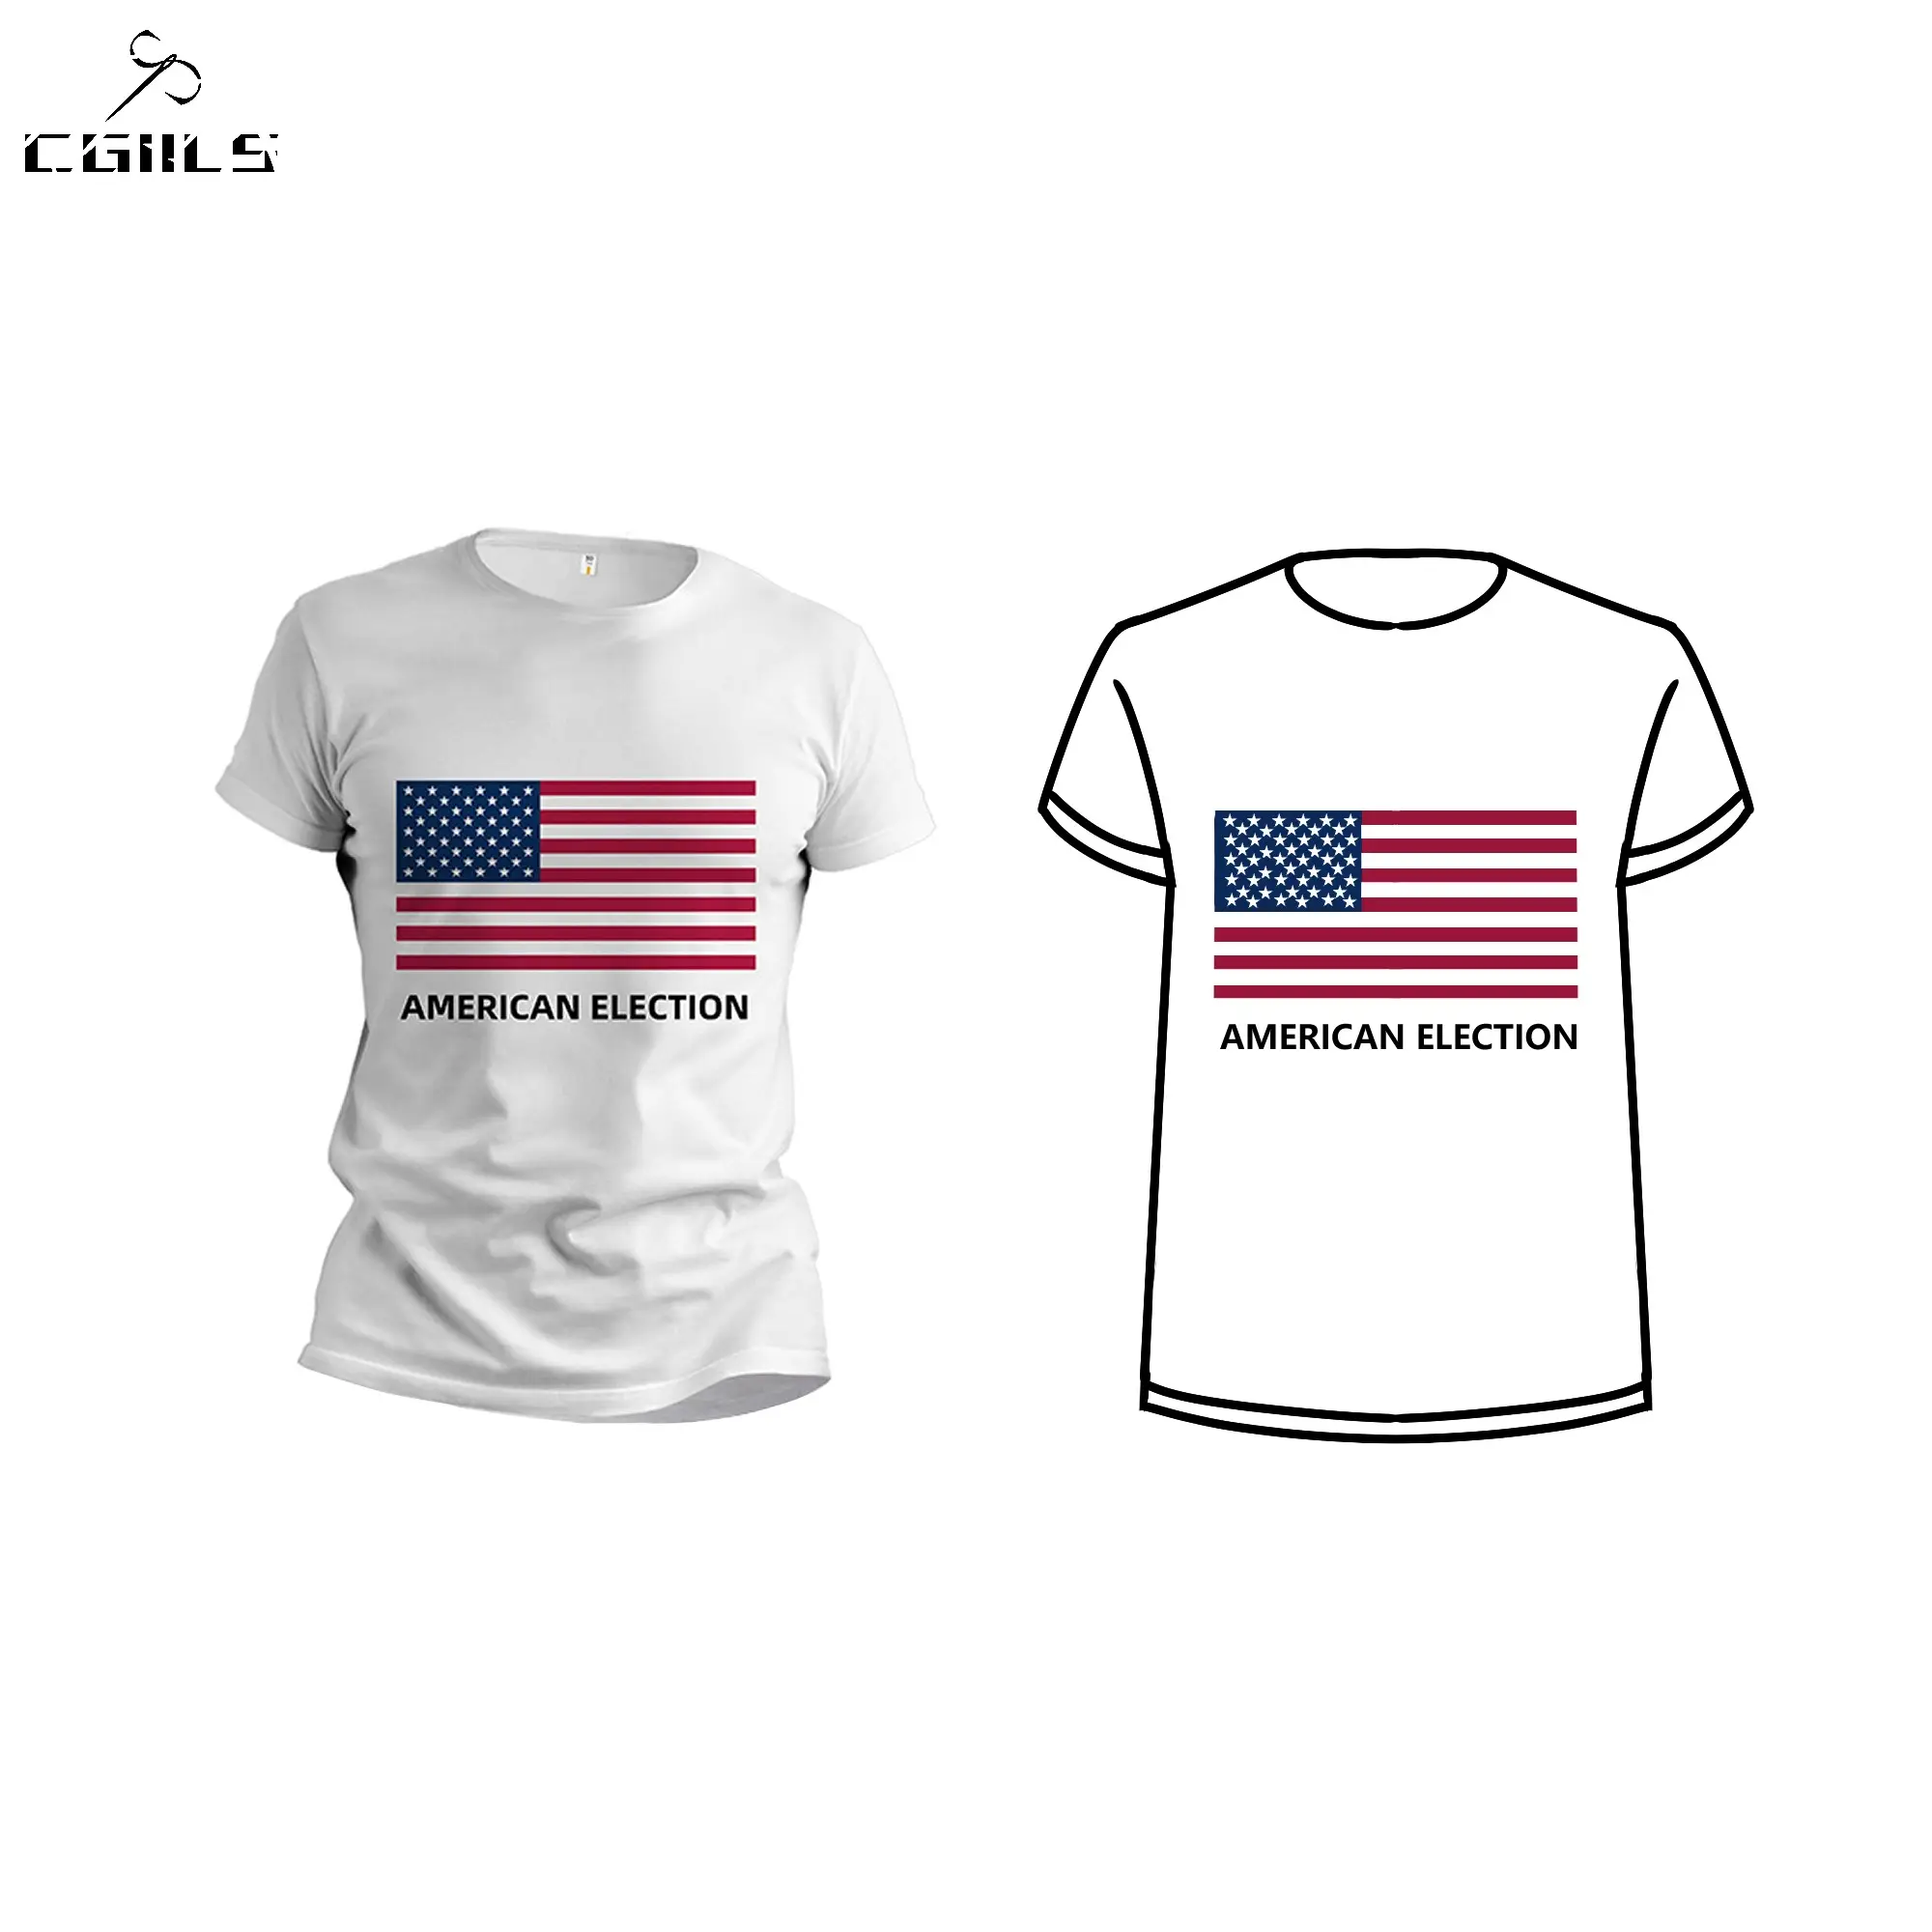 Camiseta con estampado digital personalizada de manga corta y cuello redondo, ropa deportiva, campaña electoral del Presidente, kit promocional para eventos